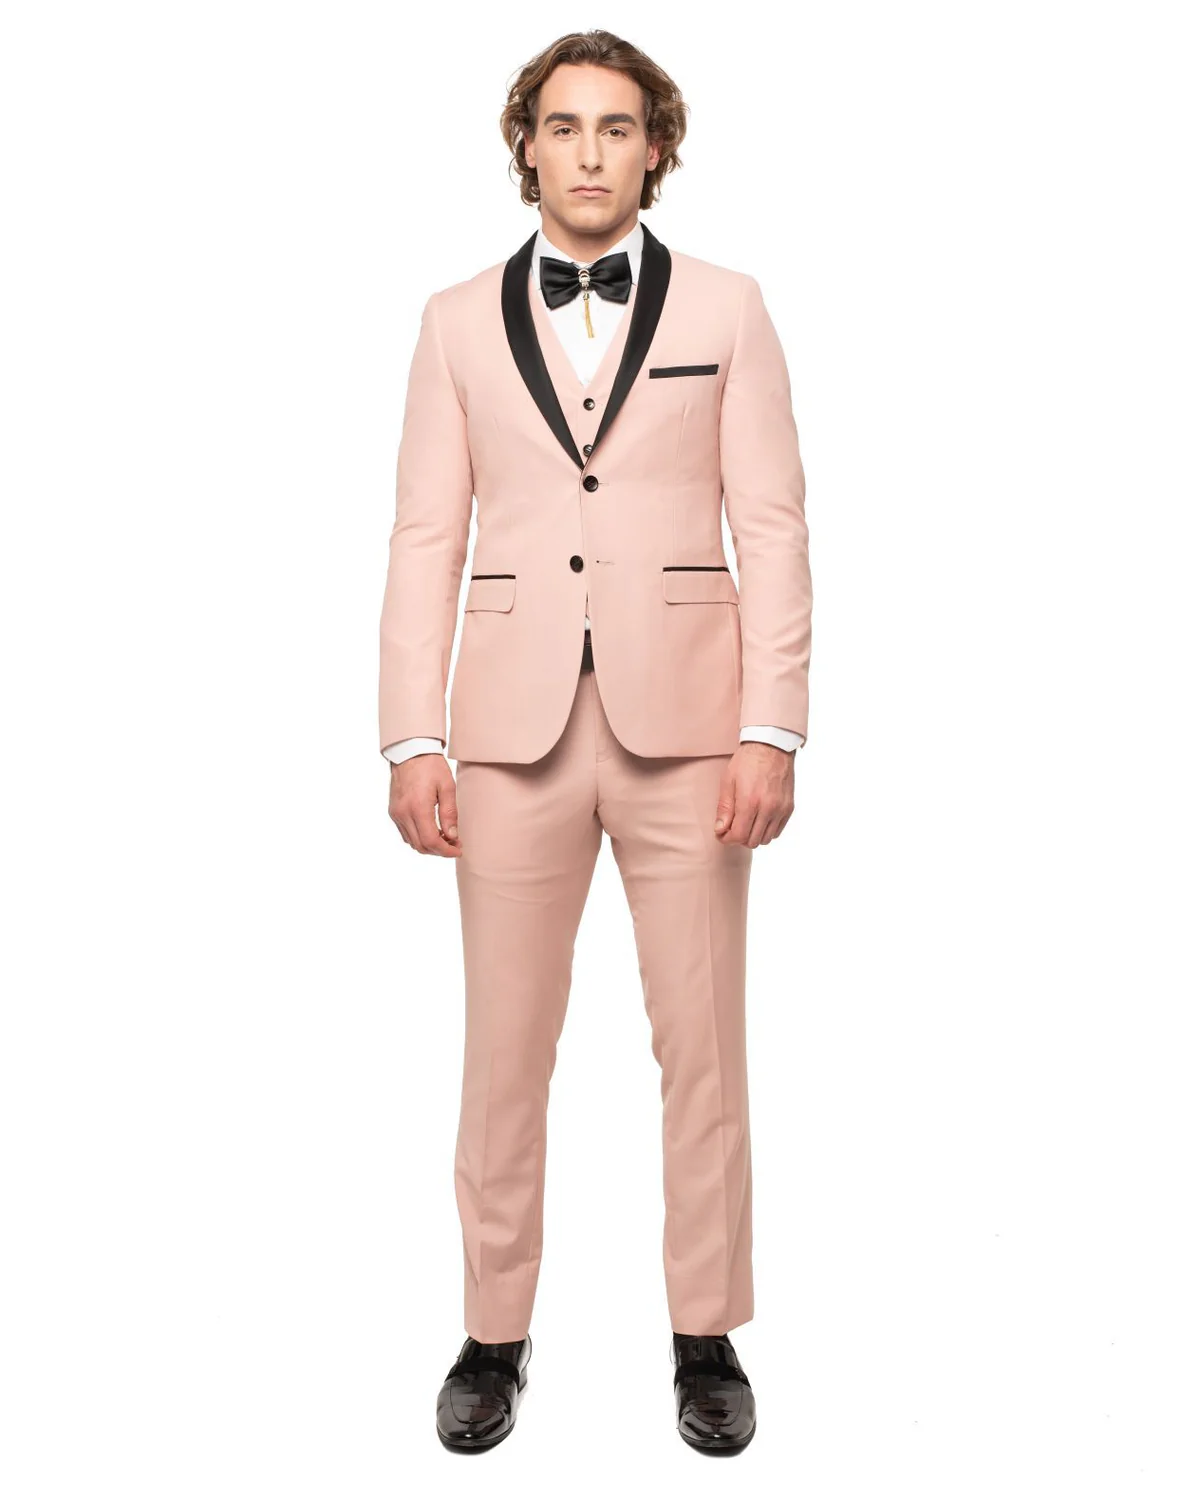 Blush Color Suit For Men - Mauve Suit - Wedding Suit